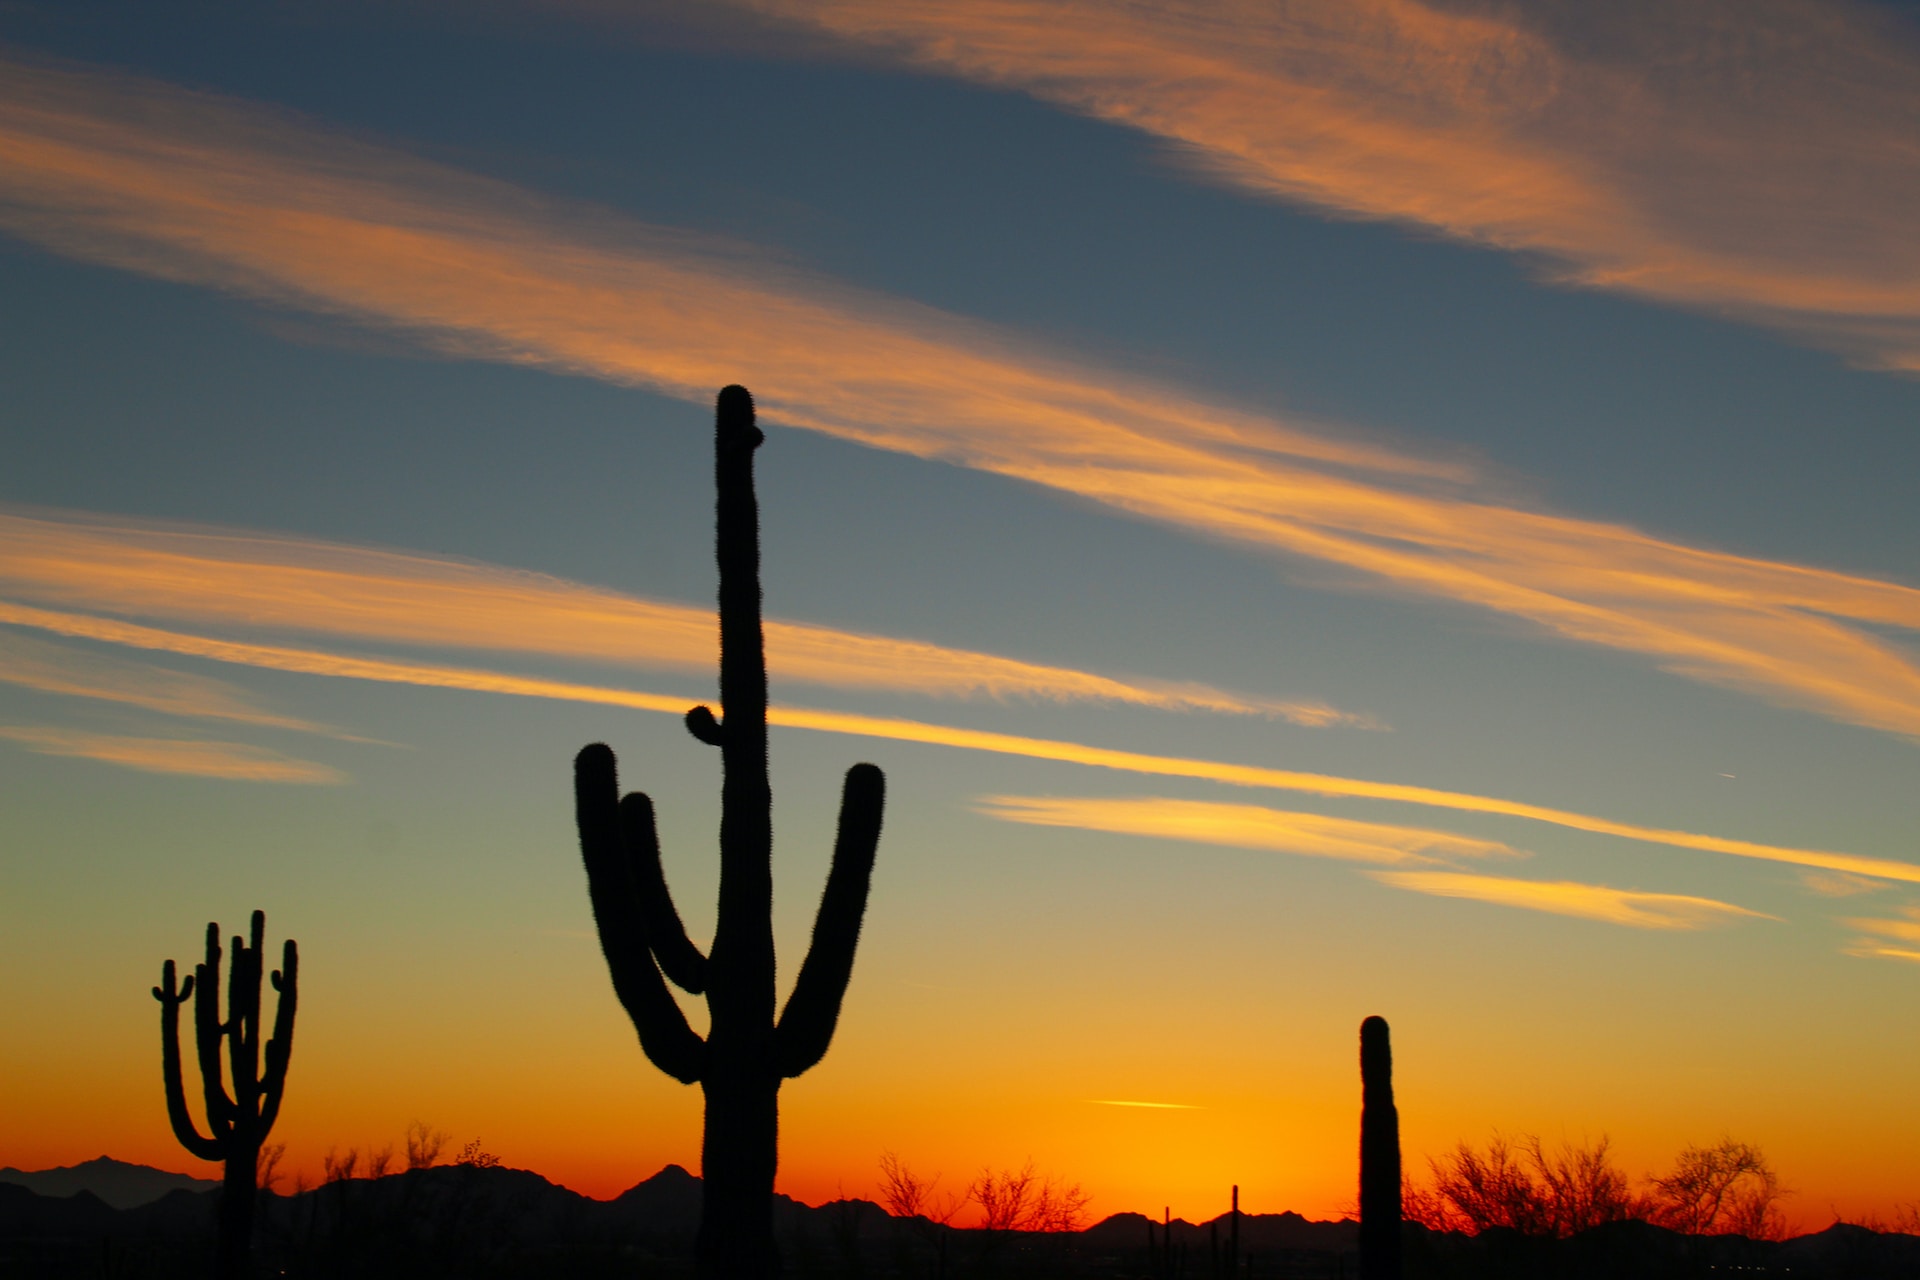 Scottsdale desert at sunset